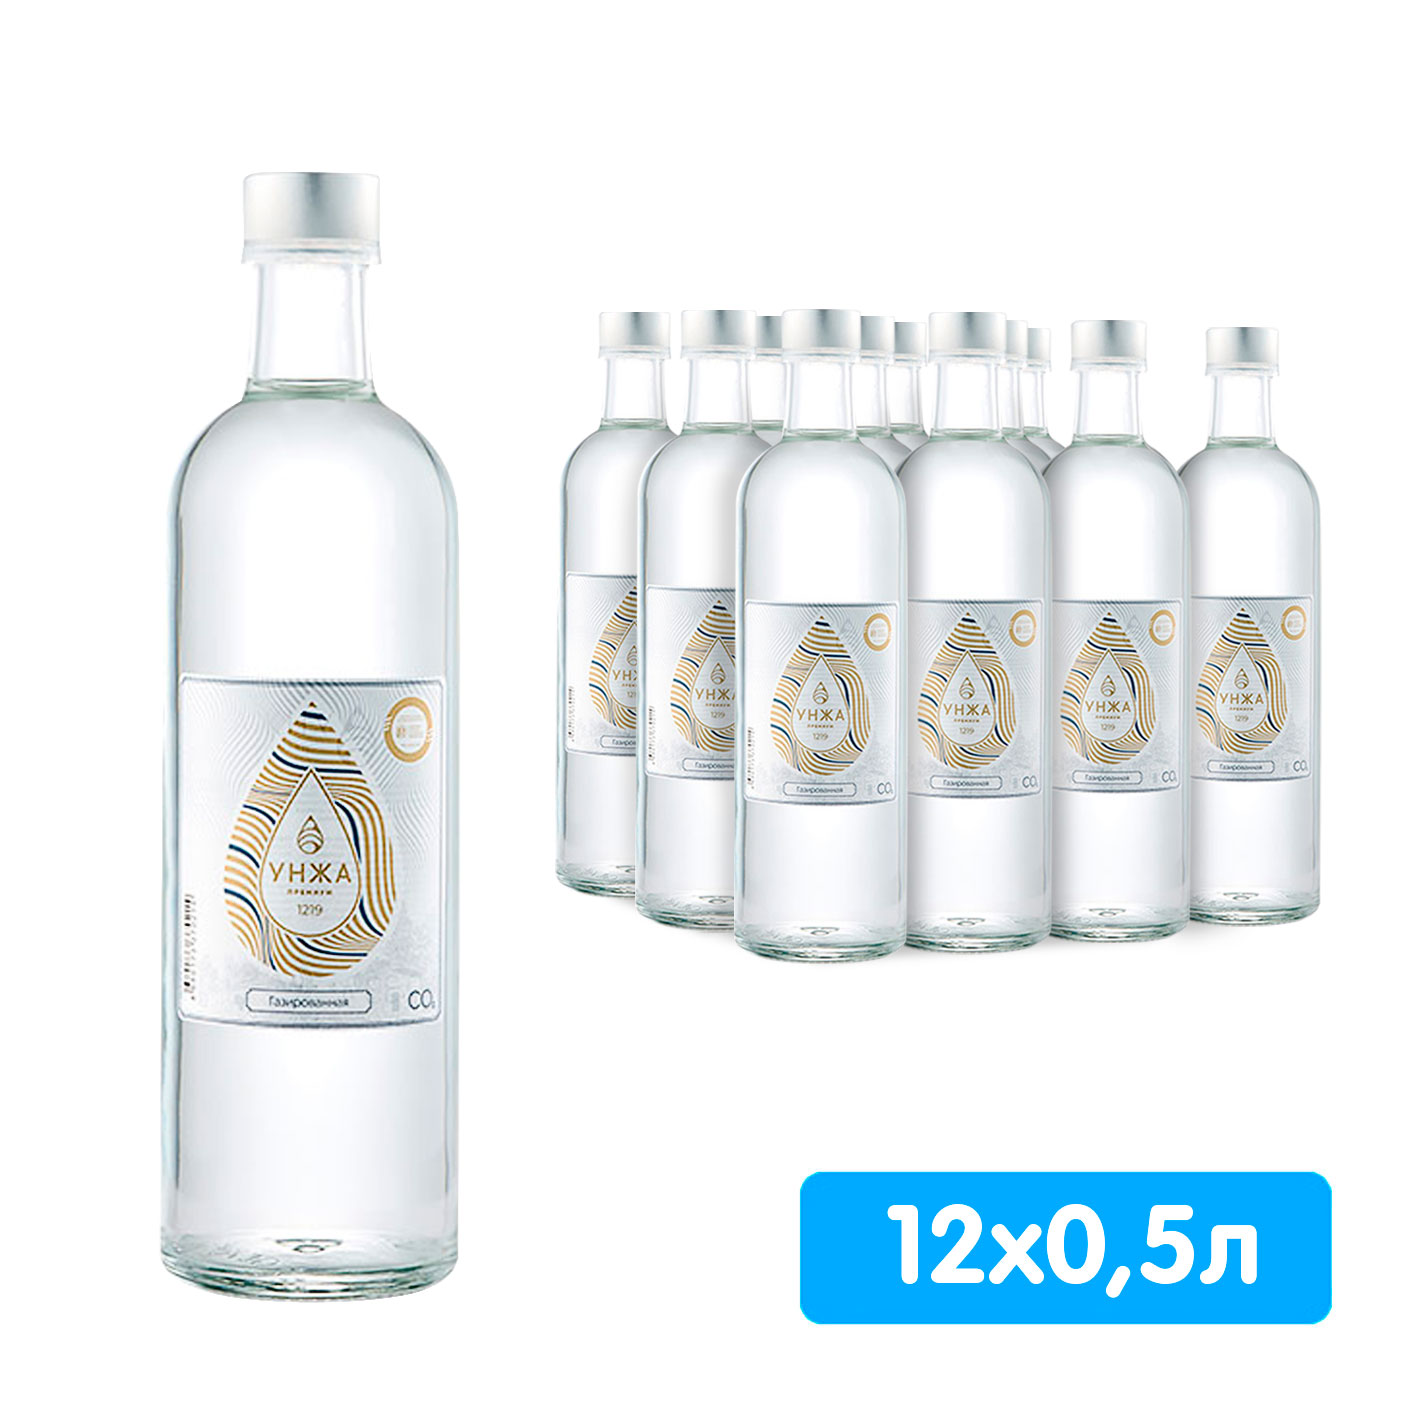 Вода Унжа Премиум 0,5 литра, газ, стекло, 12 шт. в уп